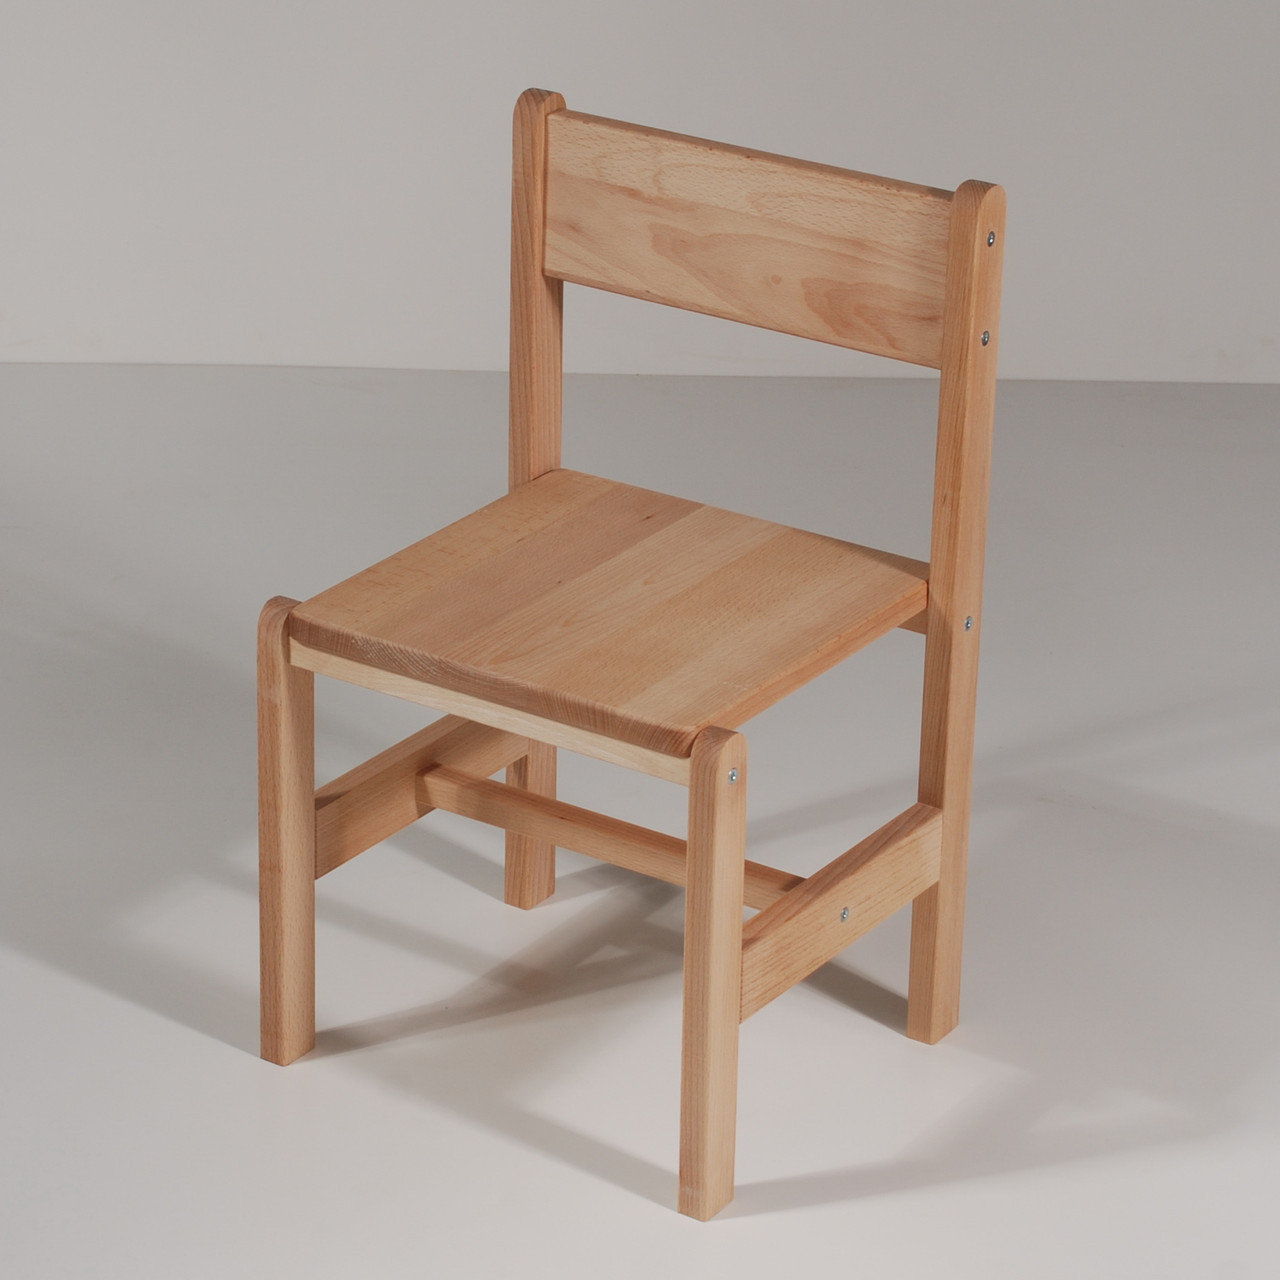 idei de scaun înalt din lemn pentru copii